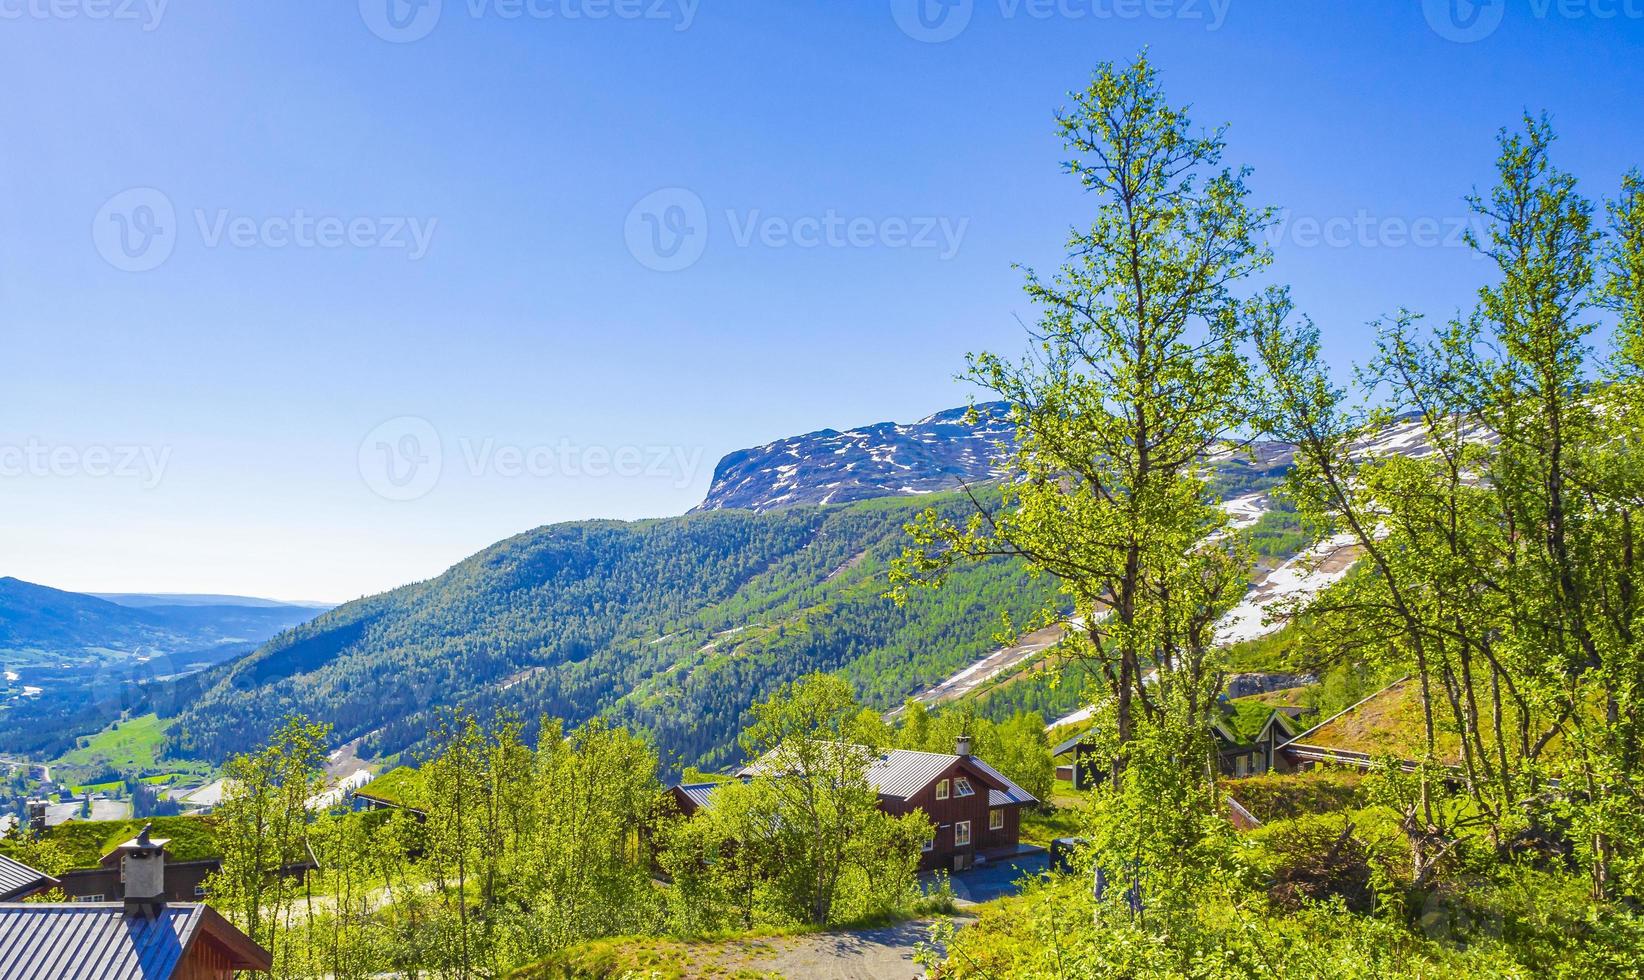 prachtig panorama noorse hemsedal skicentrum met berghut en hutten. foto